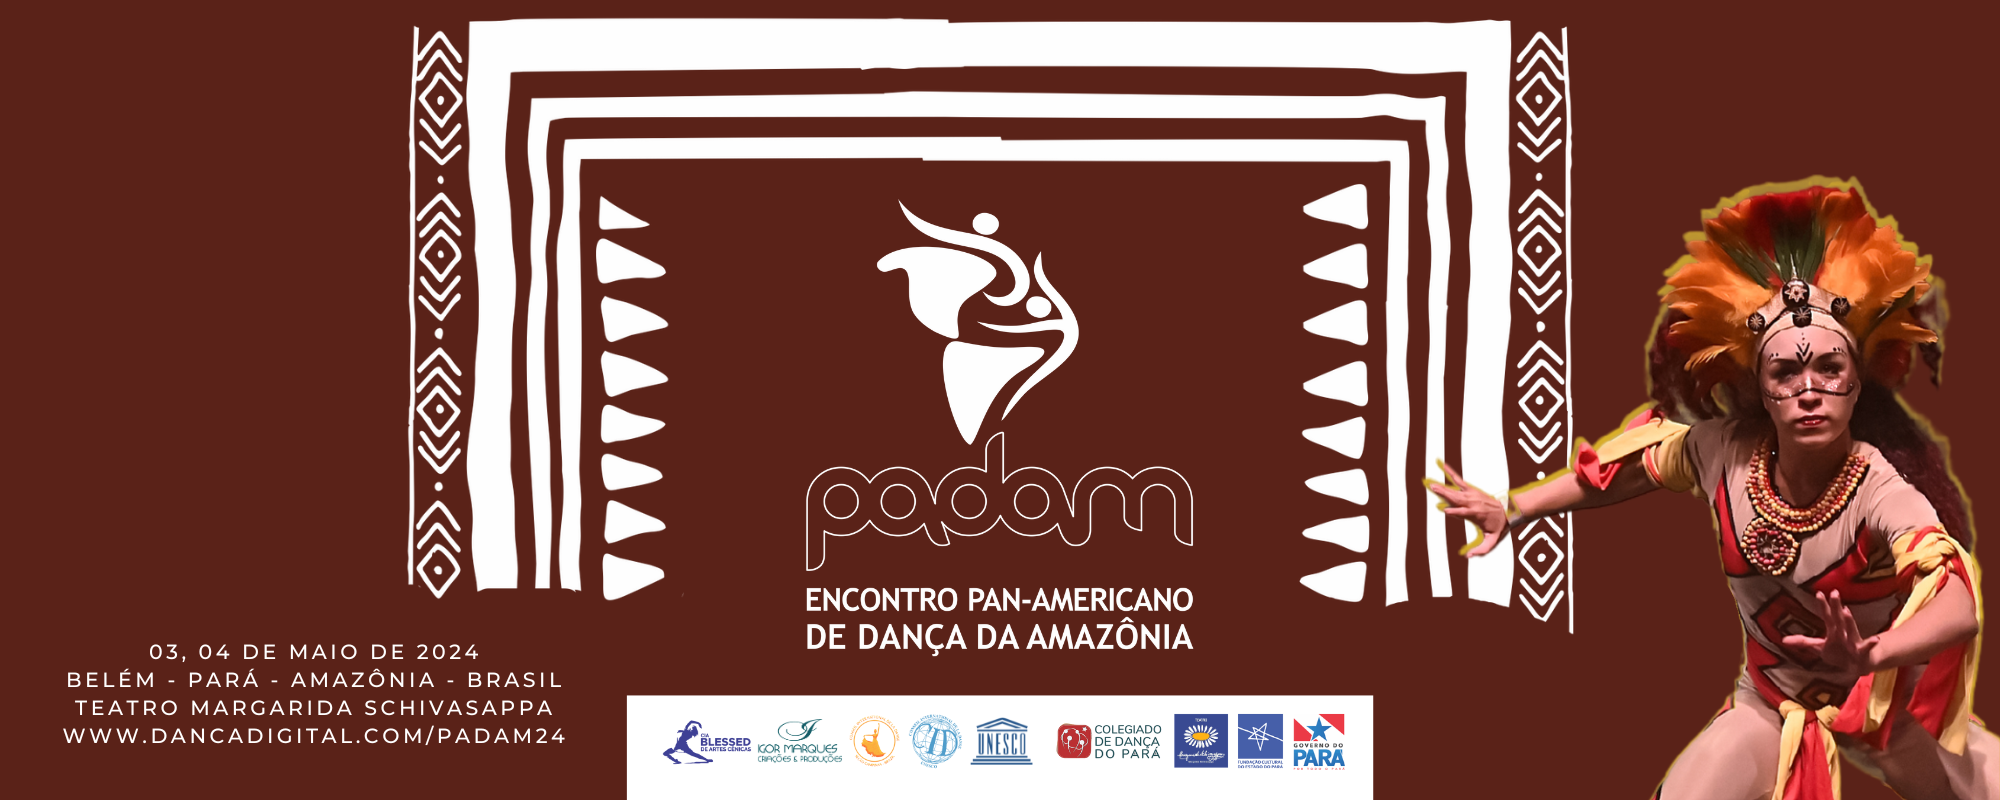 PADAM - Encontro Pan-Americano de Dança da Amazônia 2024